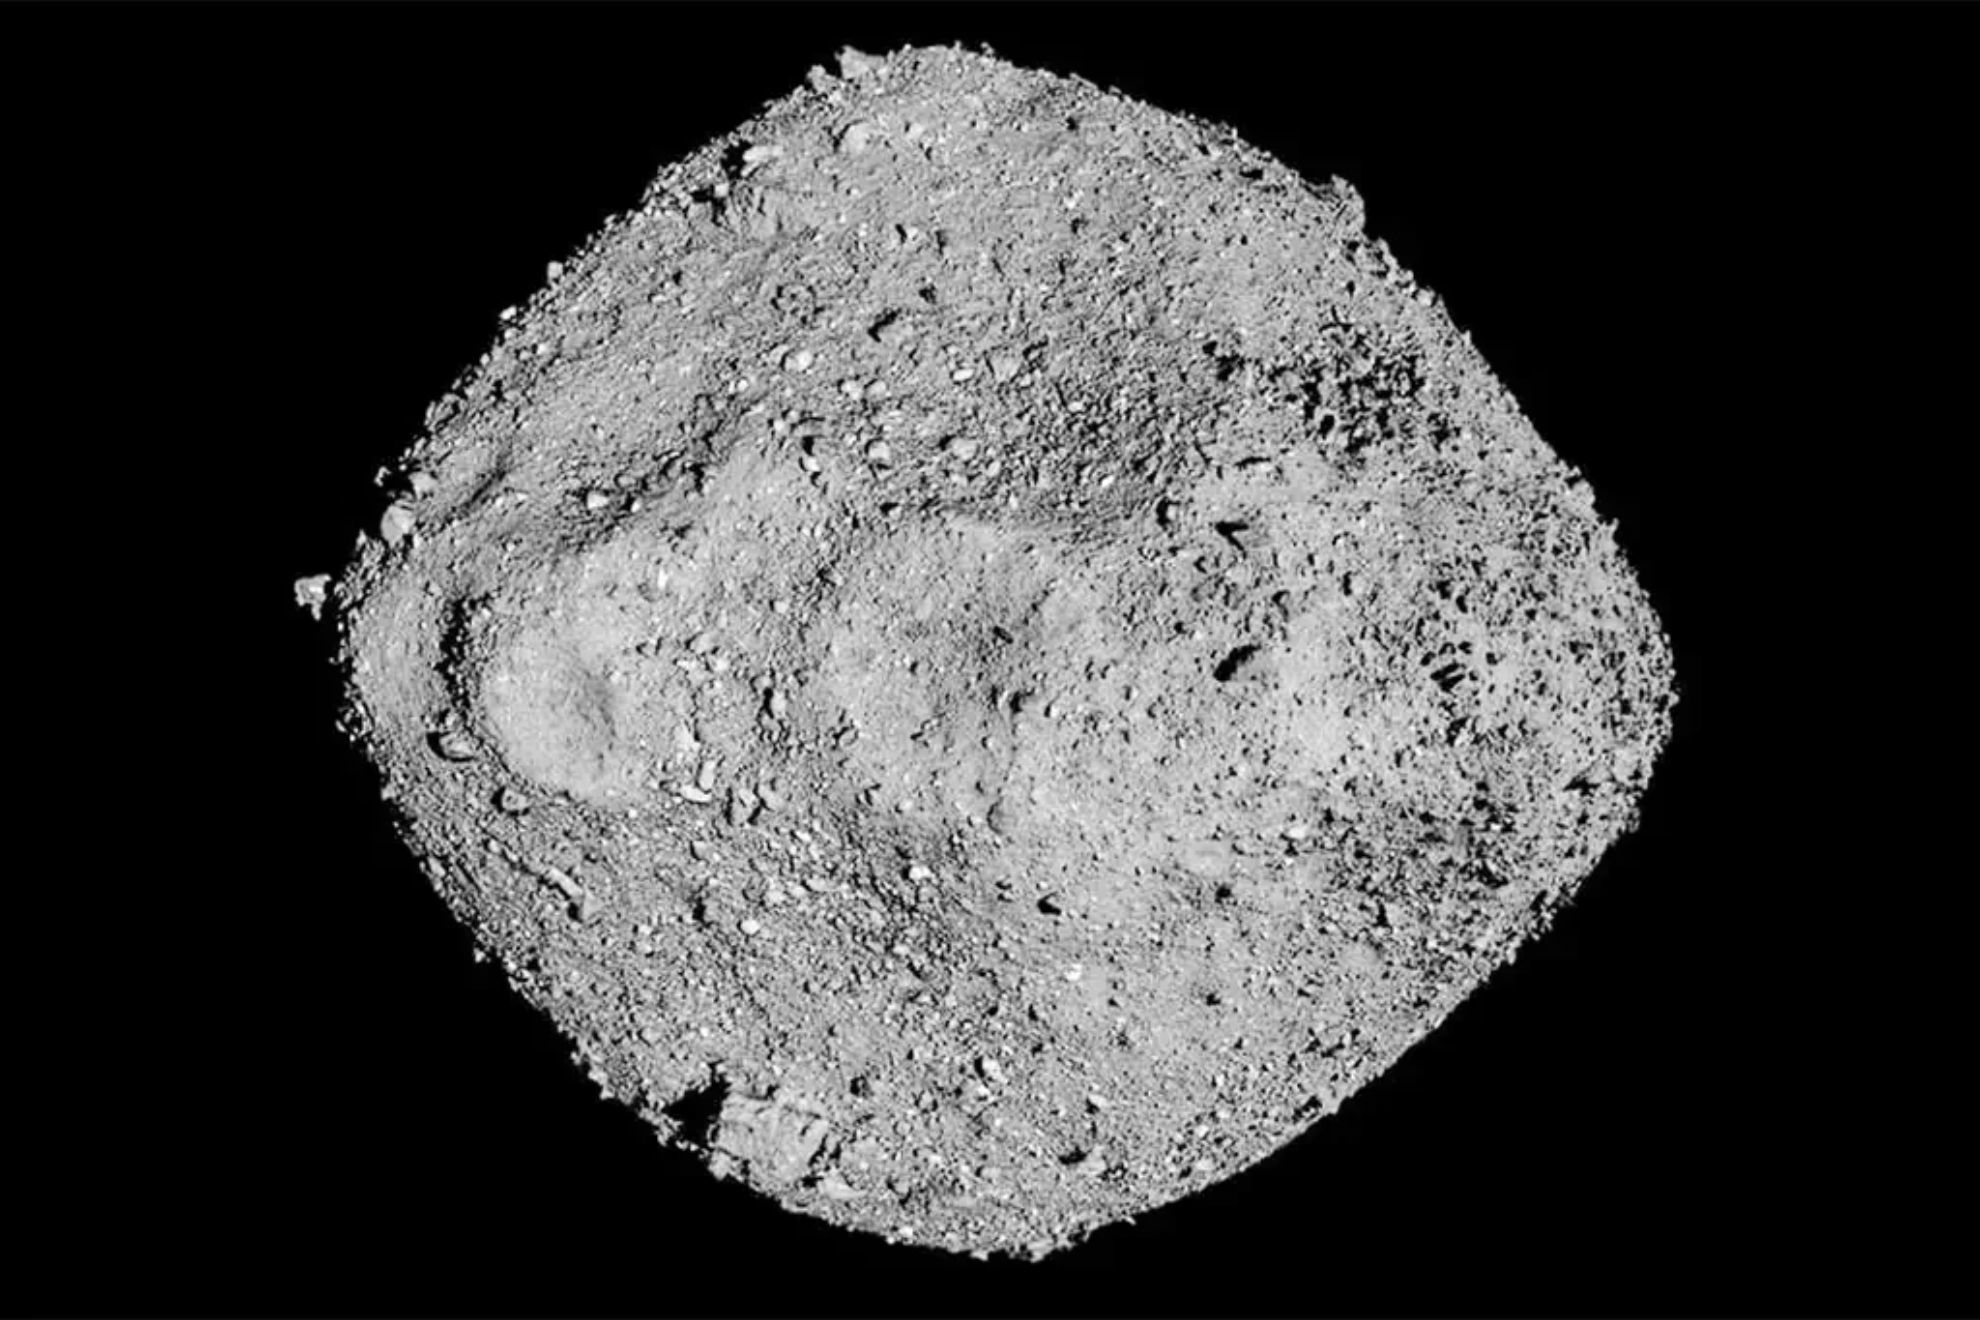 La NASA encuentra los elementos bsicos para la vida en las muestras recogidas del asteroide Bennu